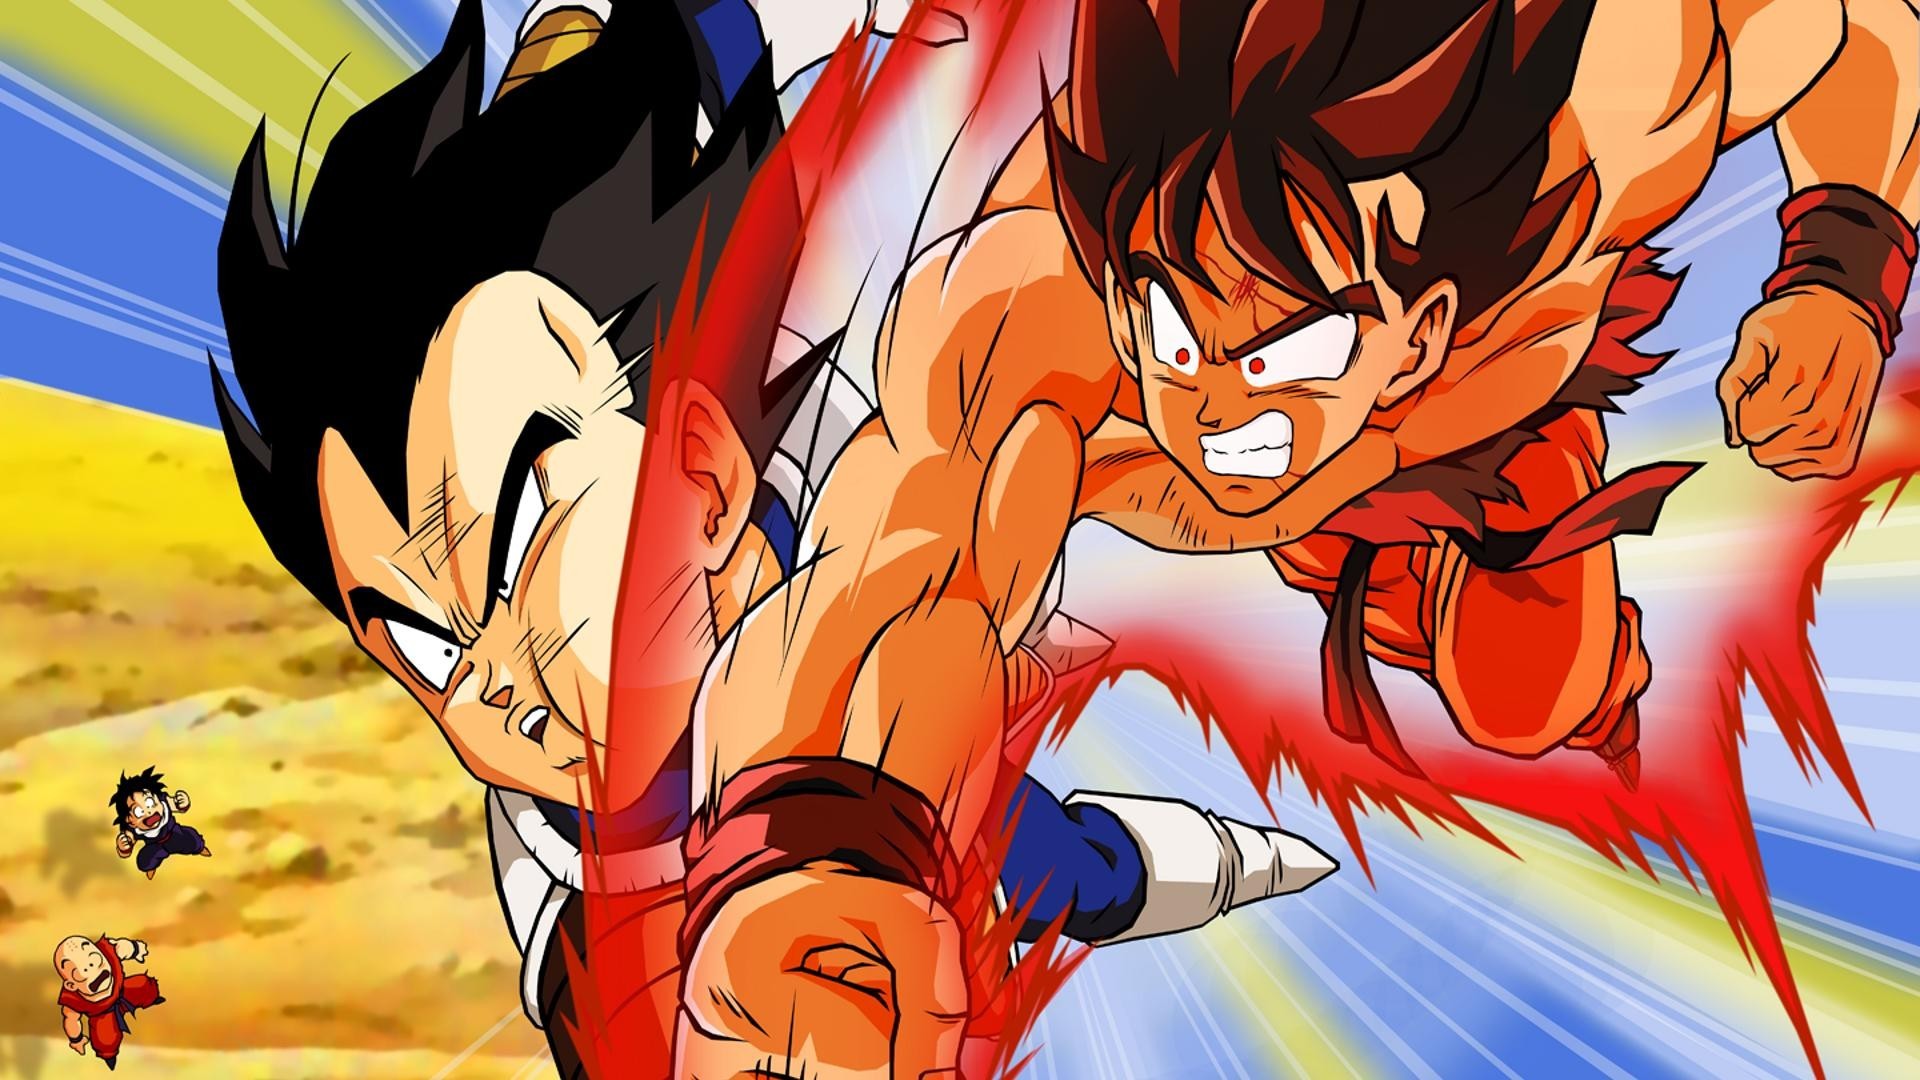 1920x1080 Free Goku VS Vegeta Fighting Wallpapers, Goku VS Vegeta Fighting  Backgrounds, Goku VS Vegeta